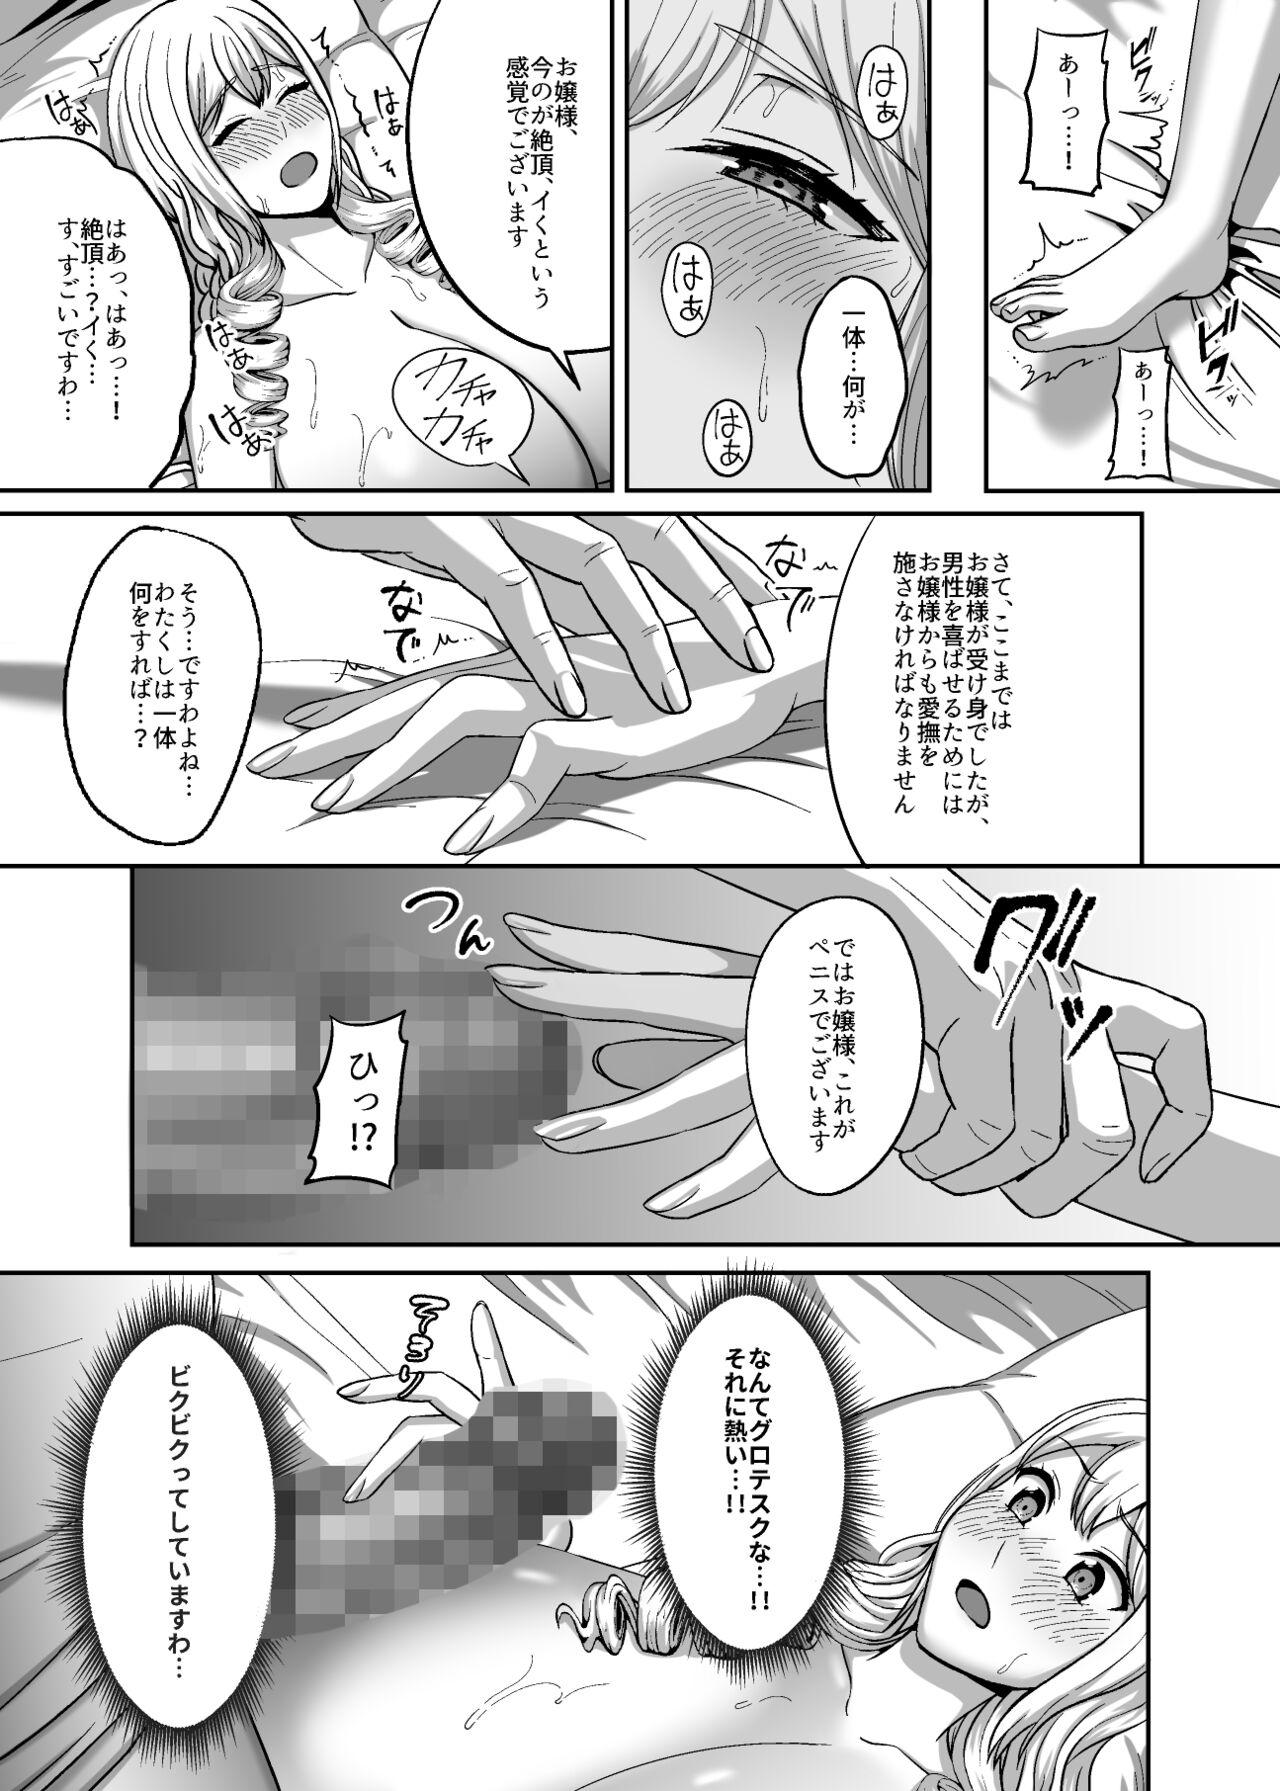 Pussy Licking Ichiryuu no Lady wa Seikoui no Gijutsu mo Ichiryuu denakute wa - Original Sweet - Page 10